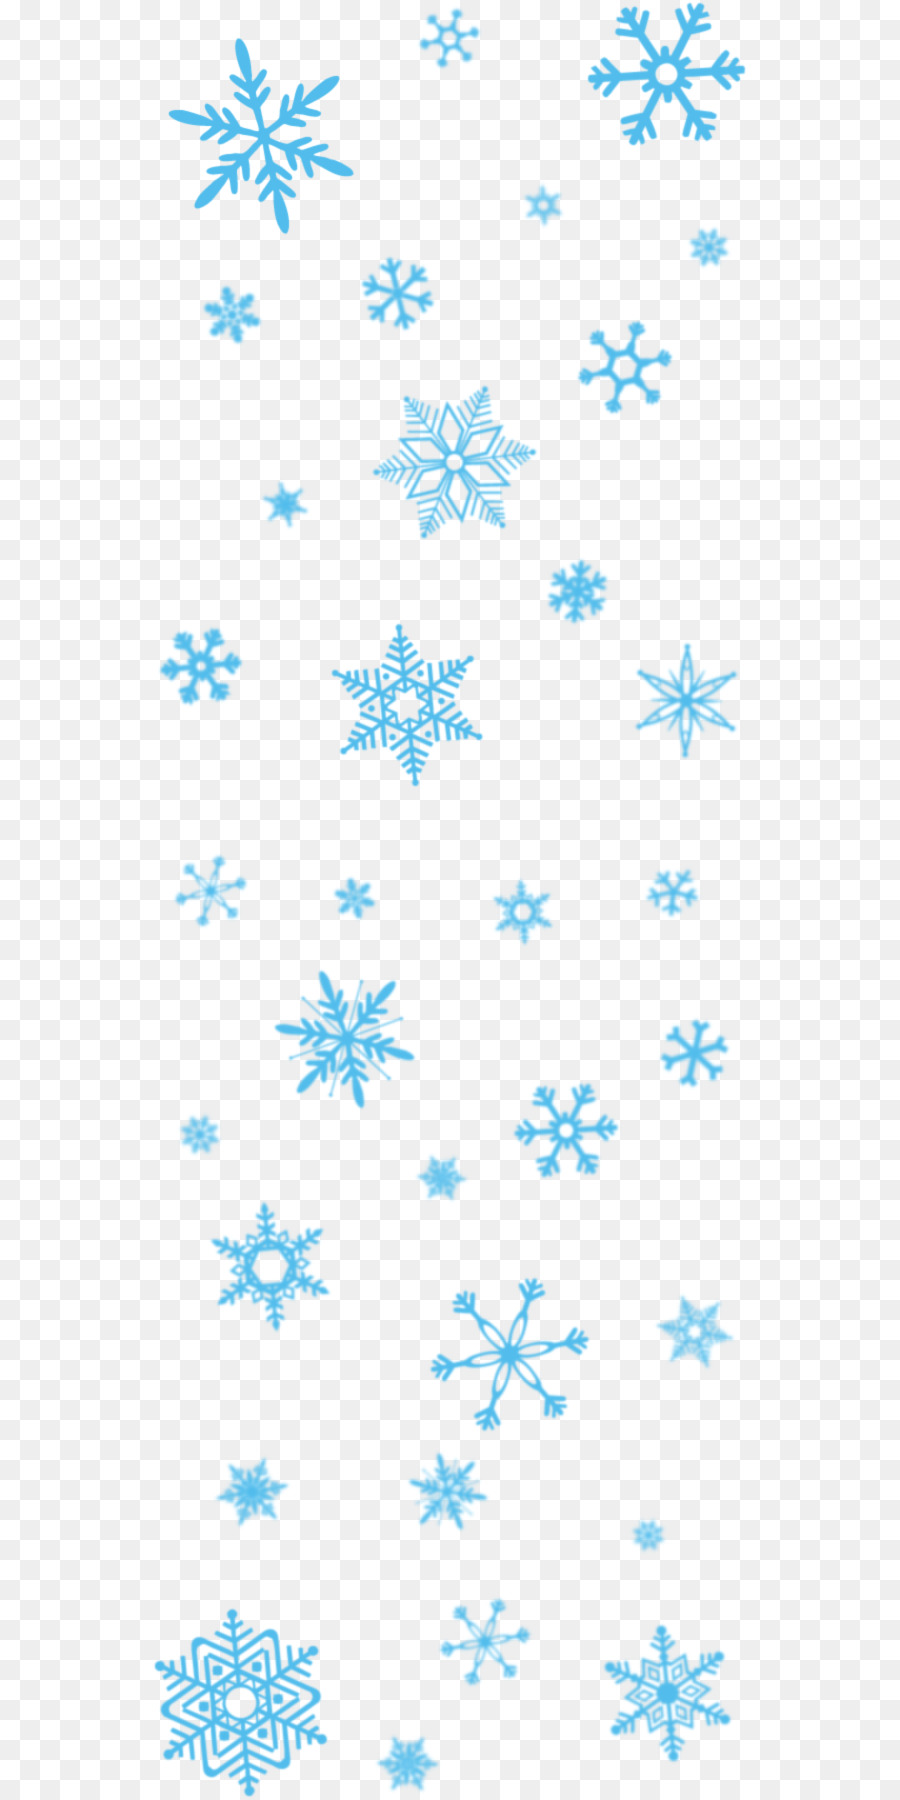 Snowflake Clip art - Frozen Snowflake PNG Picture png download - 600*1800 - Free Transparent Snowflake png Download.